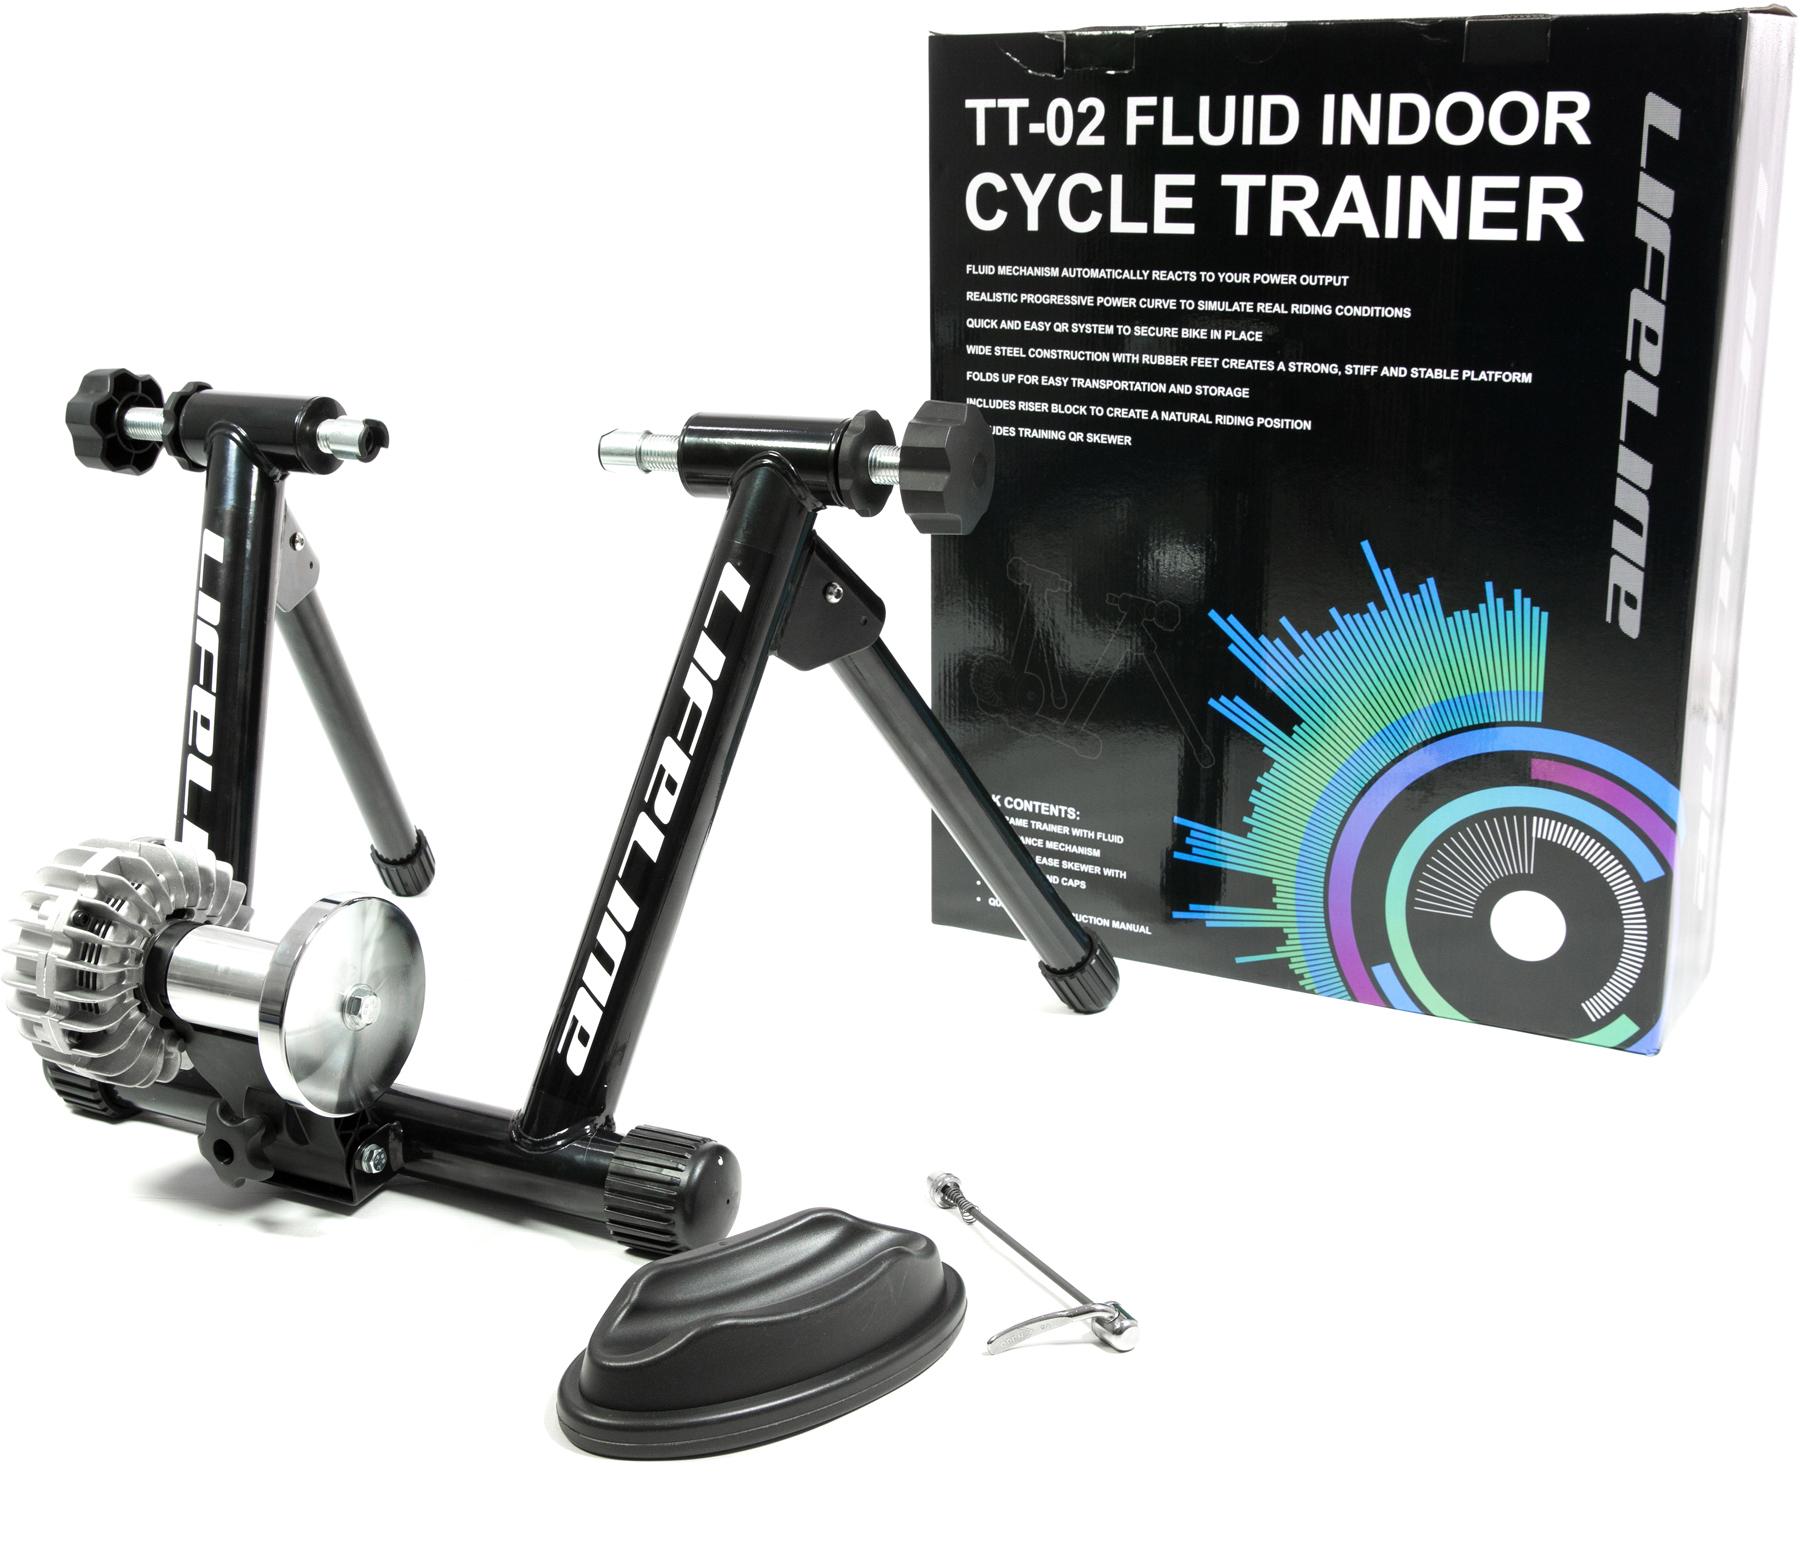 TT-02 FLUID INDOOR CYCLE TRAINER